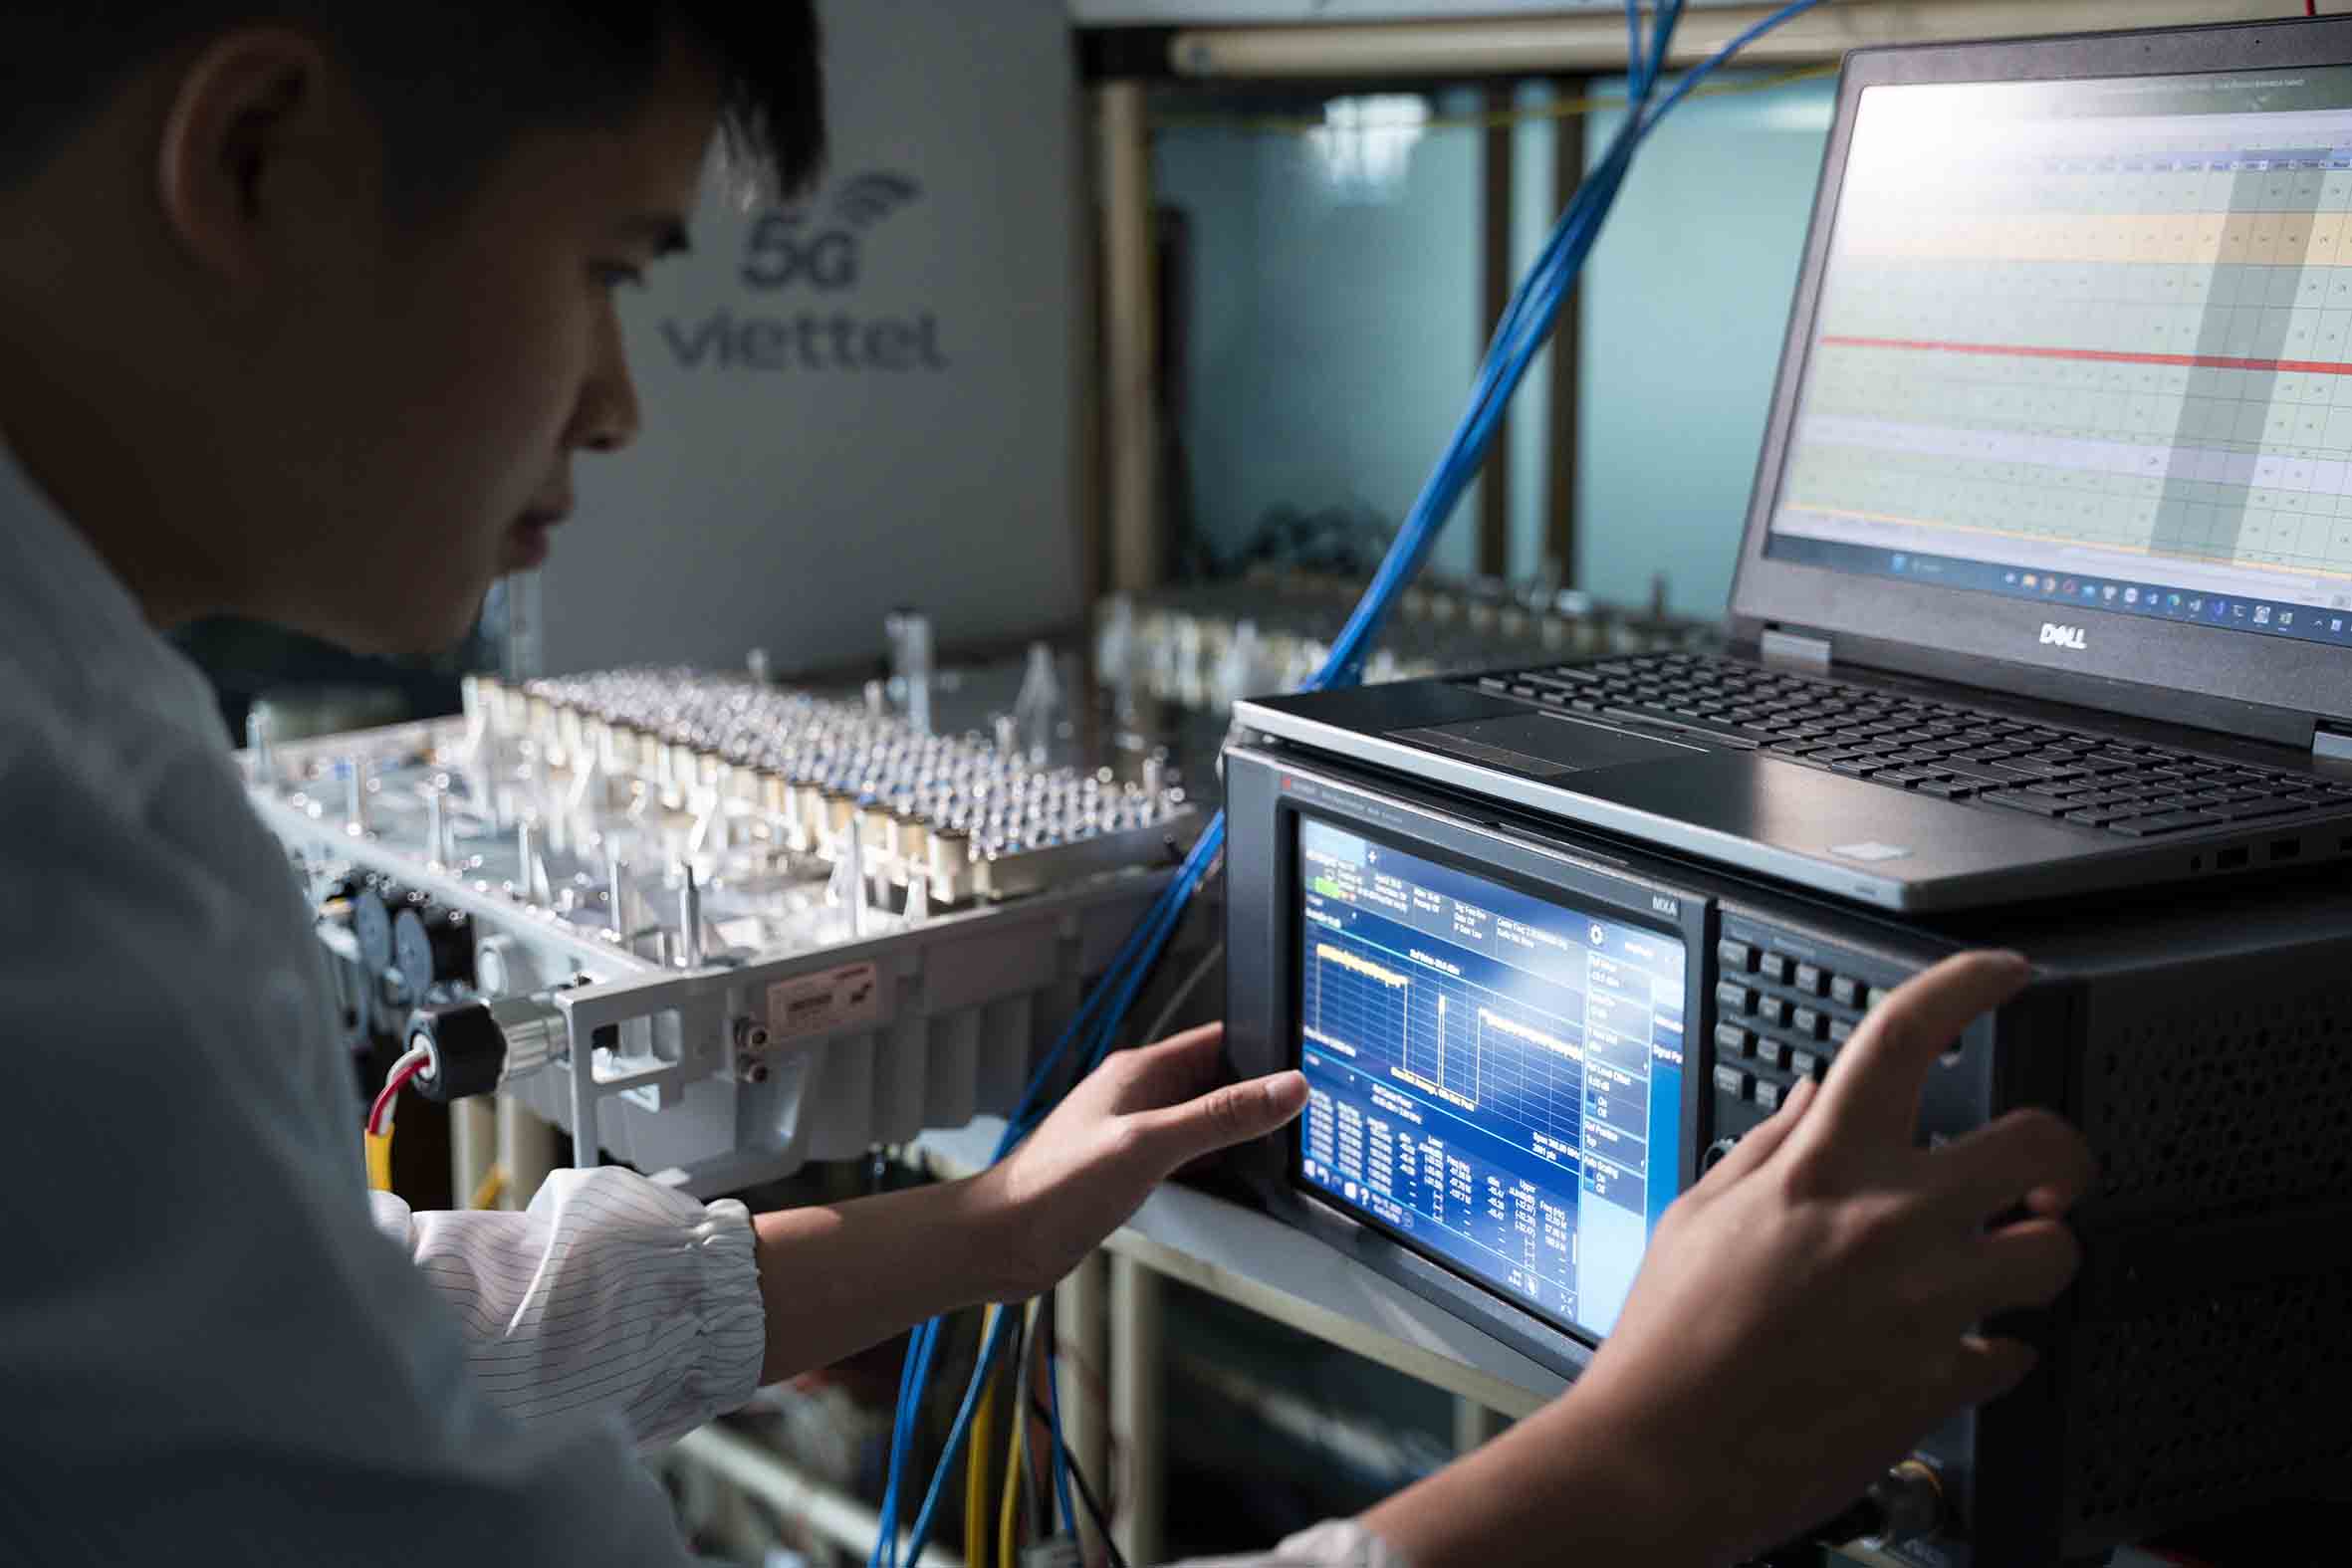 Kết quả này sẽ góp phần thúc đẩy tiến trình thương mại hóa mạng 5G tại Việt Nam và thị trường quốc tế bằng một phần thiết bị 5G trong nước sản xuất vào năm 2024. Ảnh: Viettel High Tech